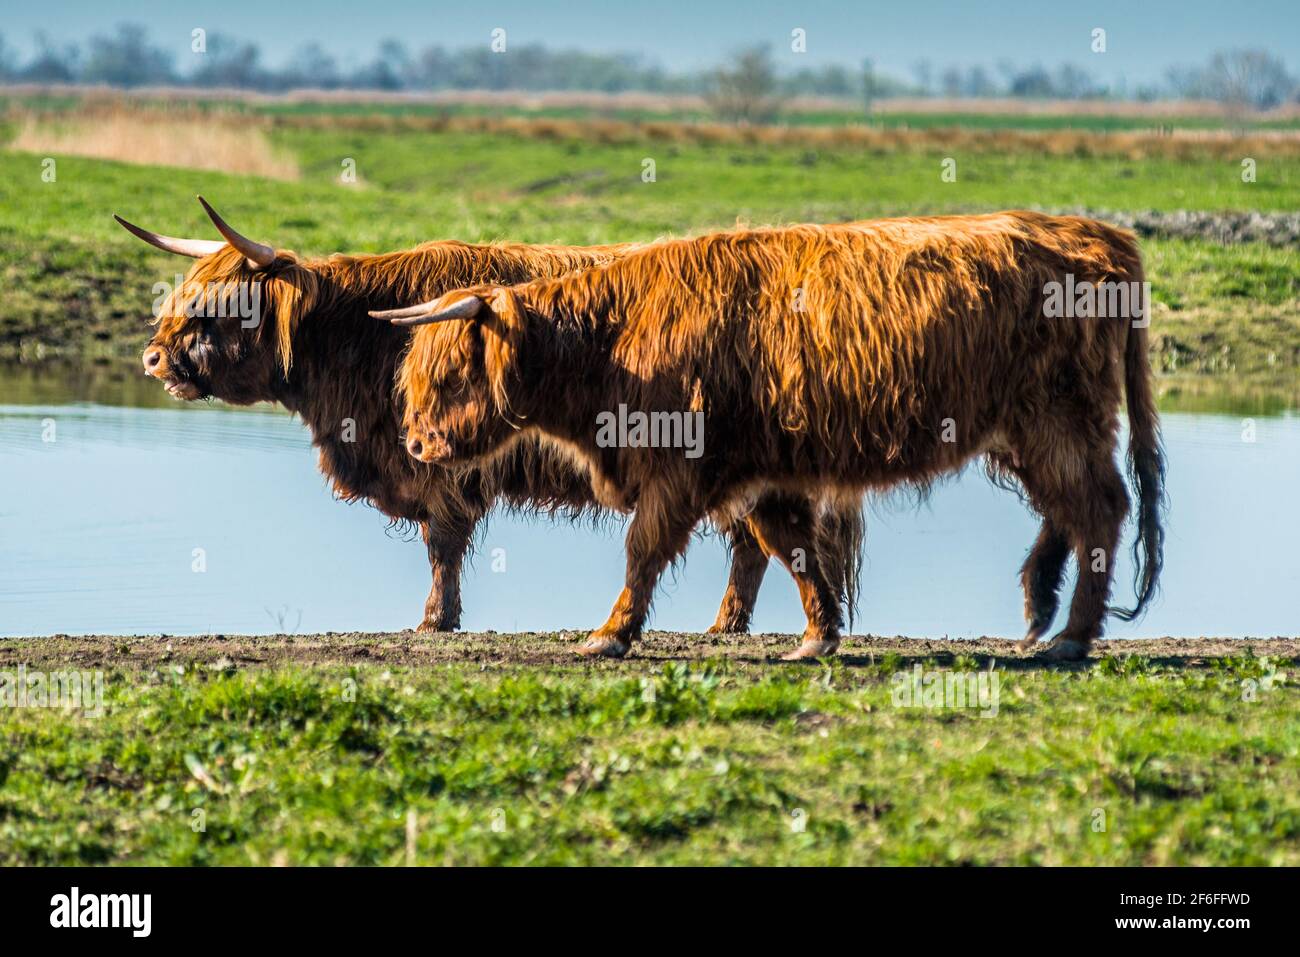 Highland cattle grazing on Wicken Fen Réserve Naturelle dans le Cambridgeshire, East Anglia, Angleterre, Royaume-Uni. Banque D'Images